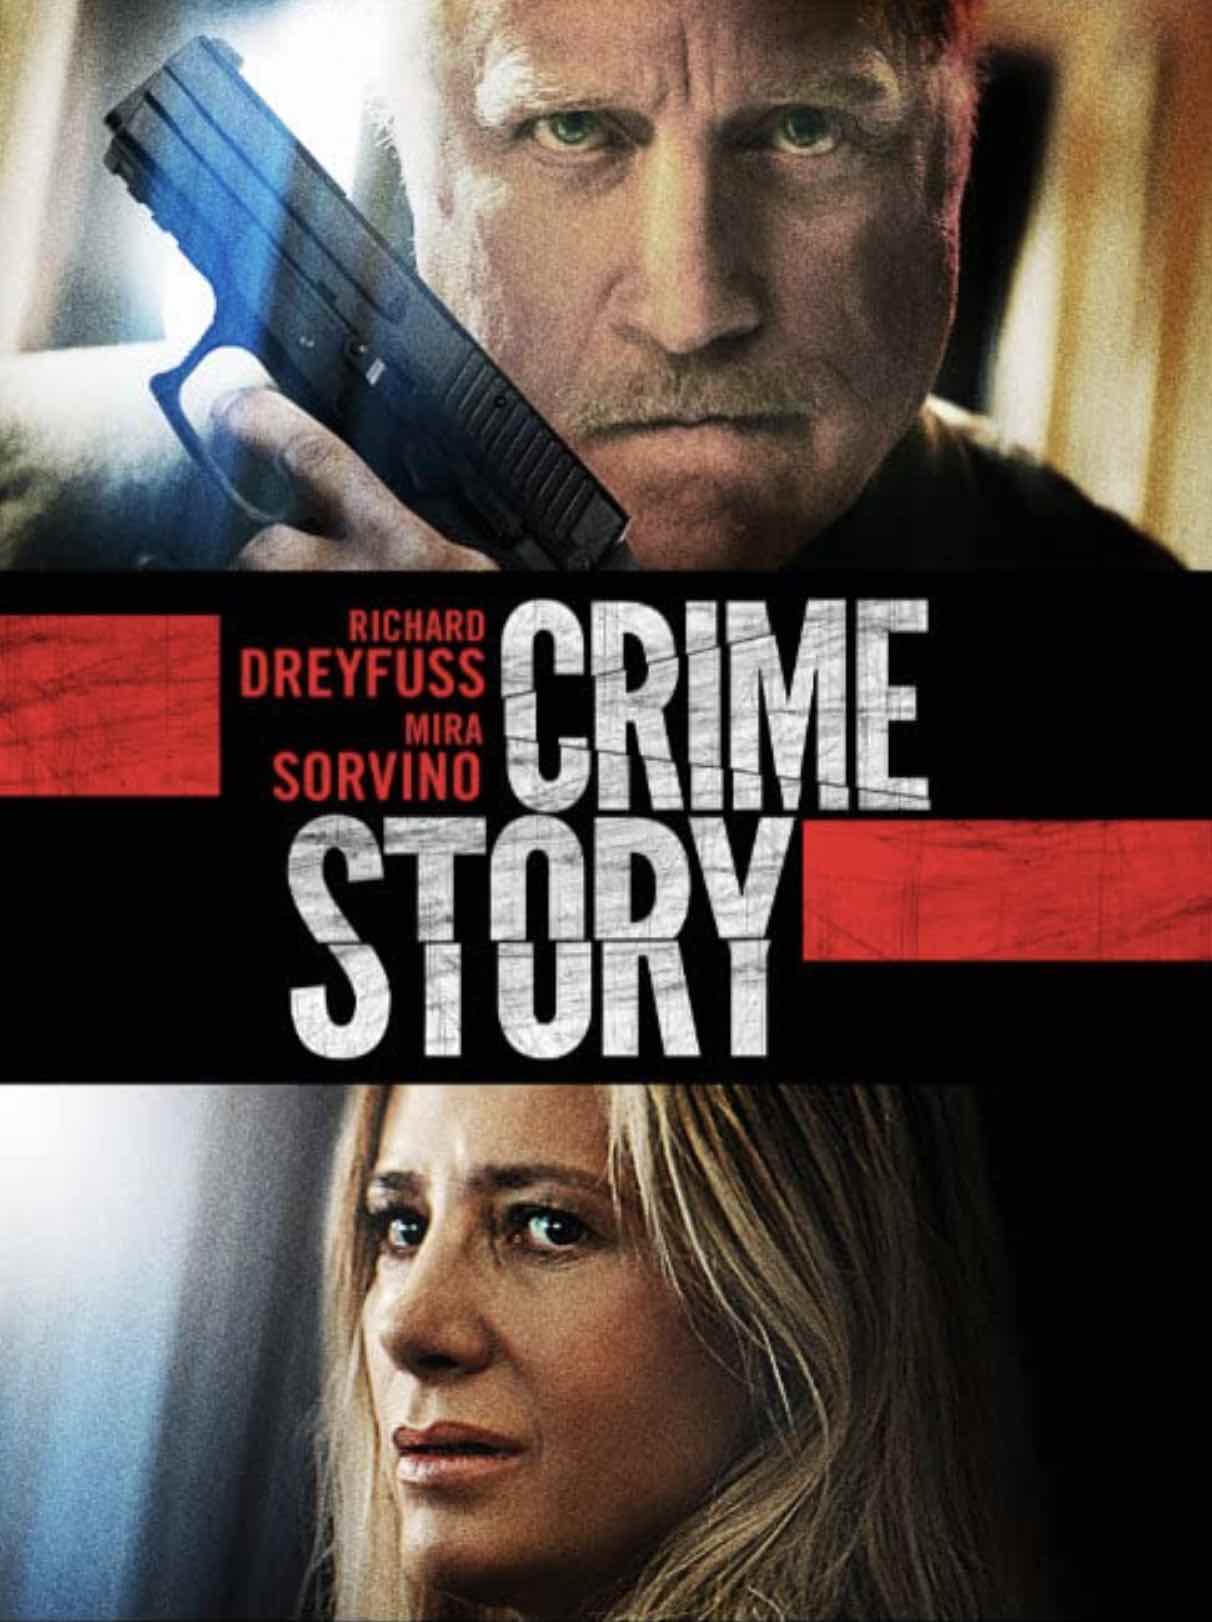 CRIME STORY (2021) Reviews of Richard Dreyfuss Mira Sorvino thriller